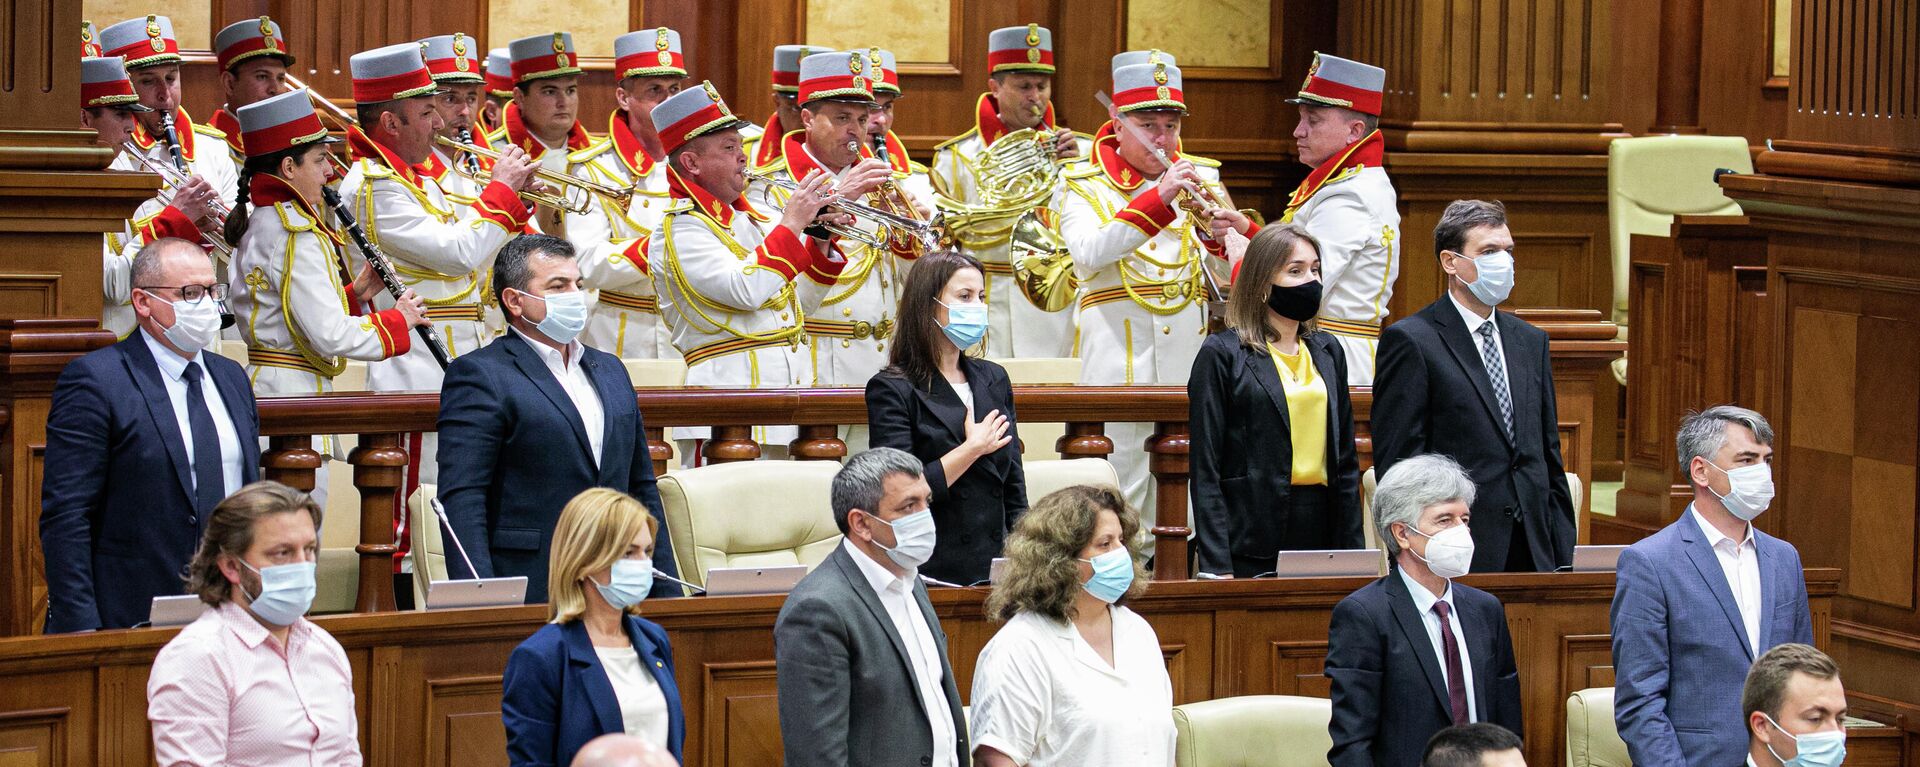 Ședința de constituire a Parlamentului de Legislatura a XI-a - 26 iulie 2021 - Sputnik Молдова, 1920, 26.07.2021